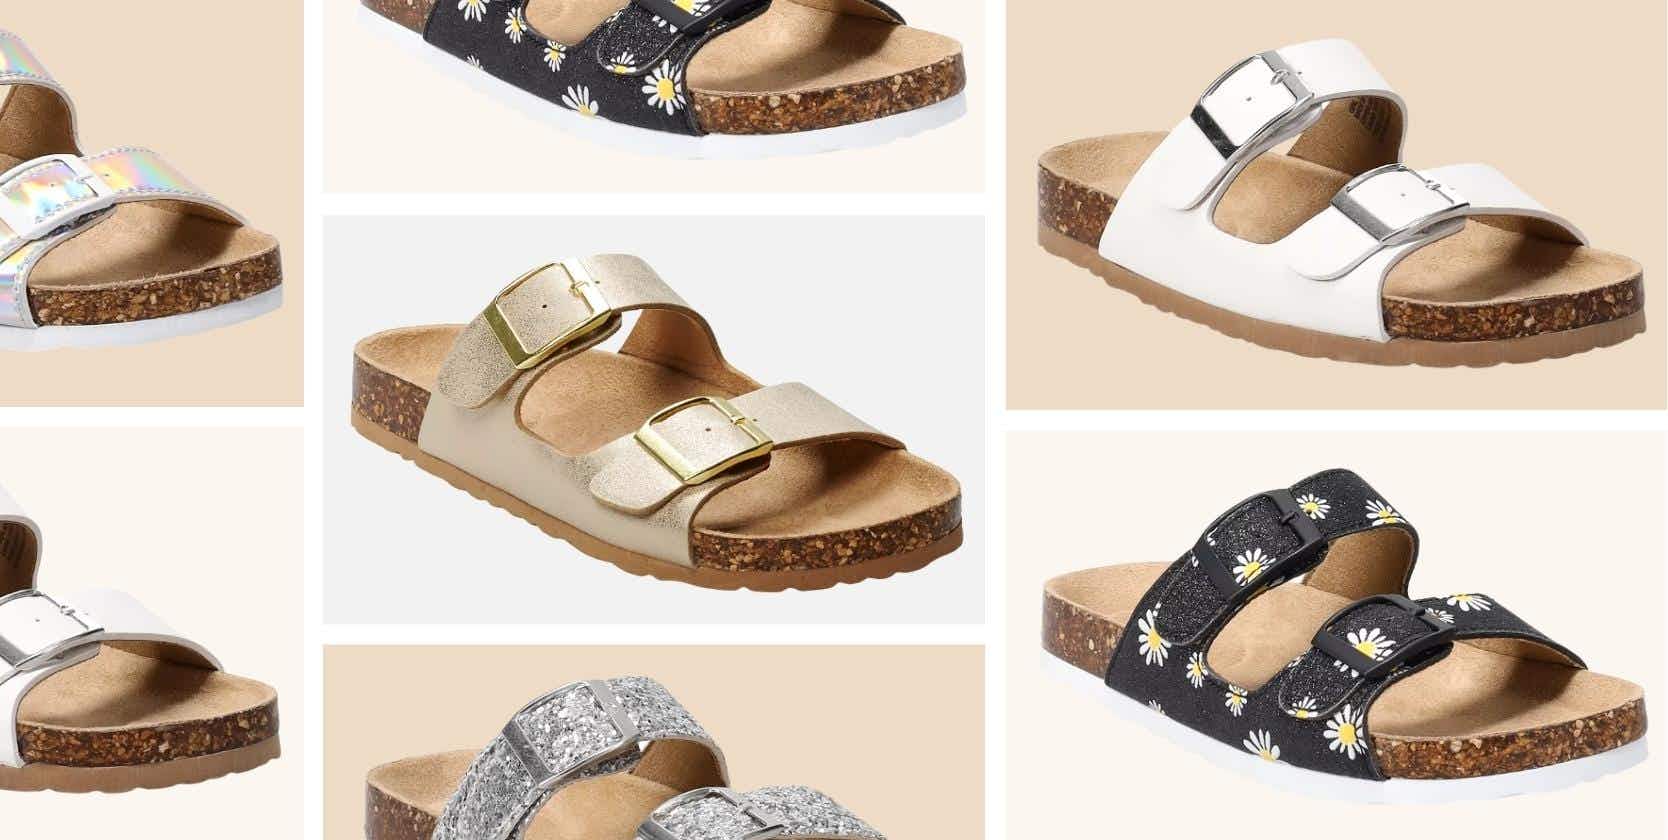 SO® Raena Kids' Slide Sandals